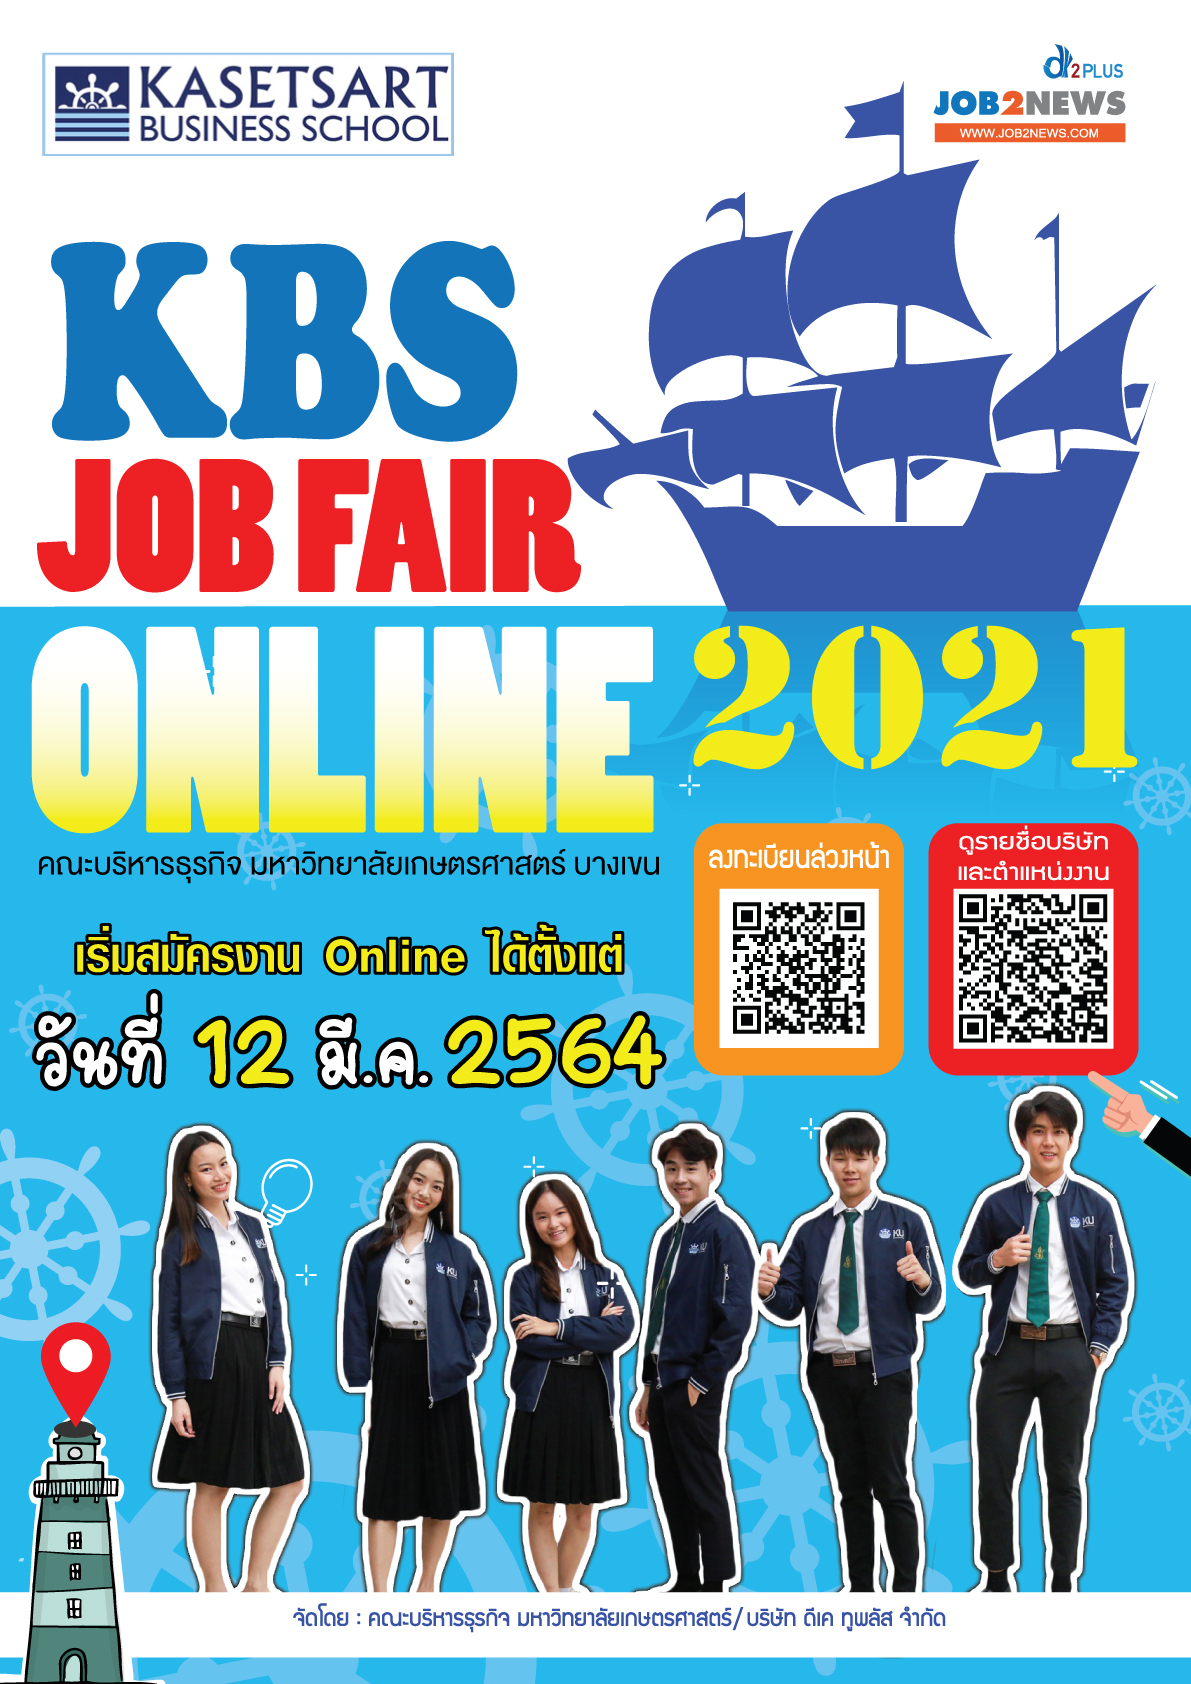 KBS Job Fair Online 2021